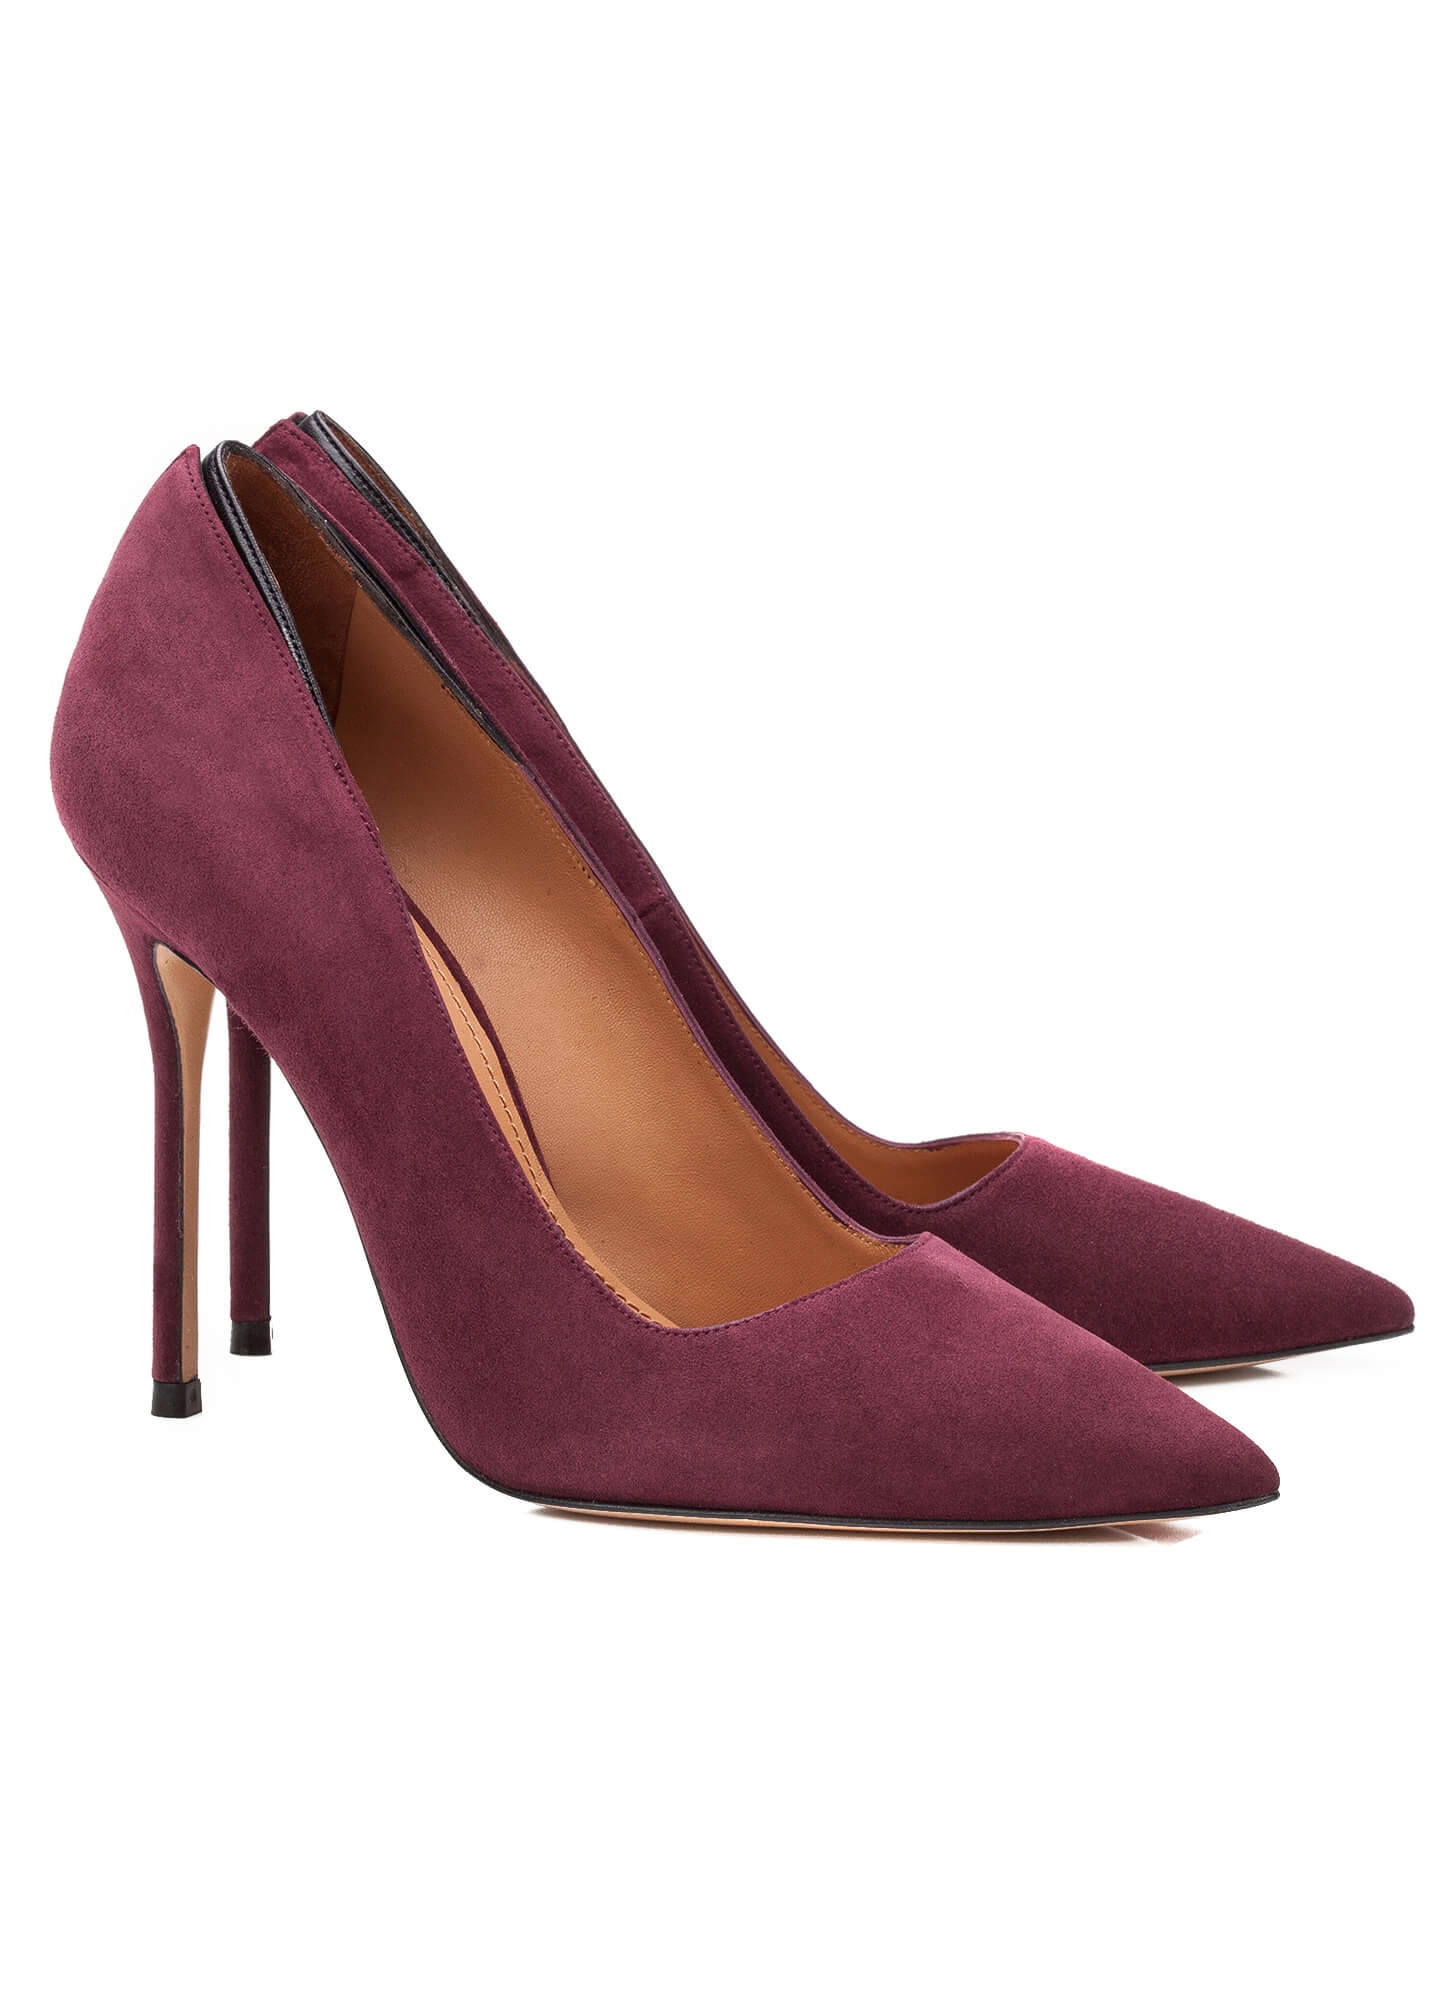 High heel pumps in aubergine suede - online shoe store Pura Lopez ...